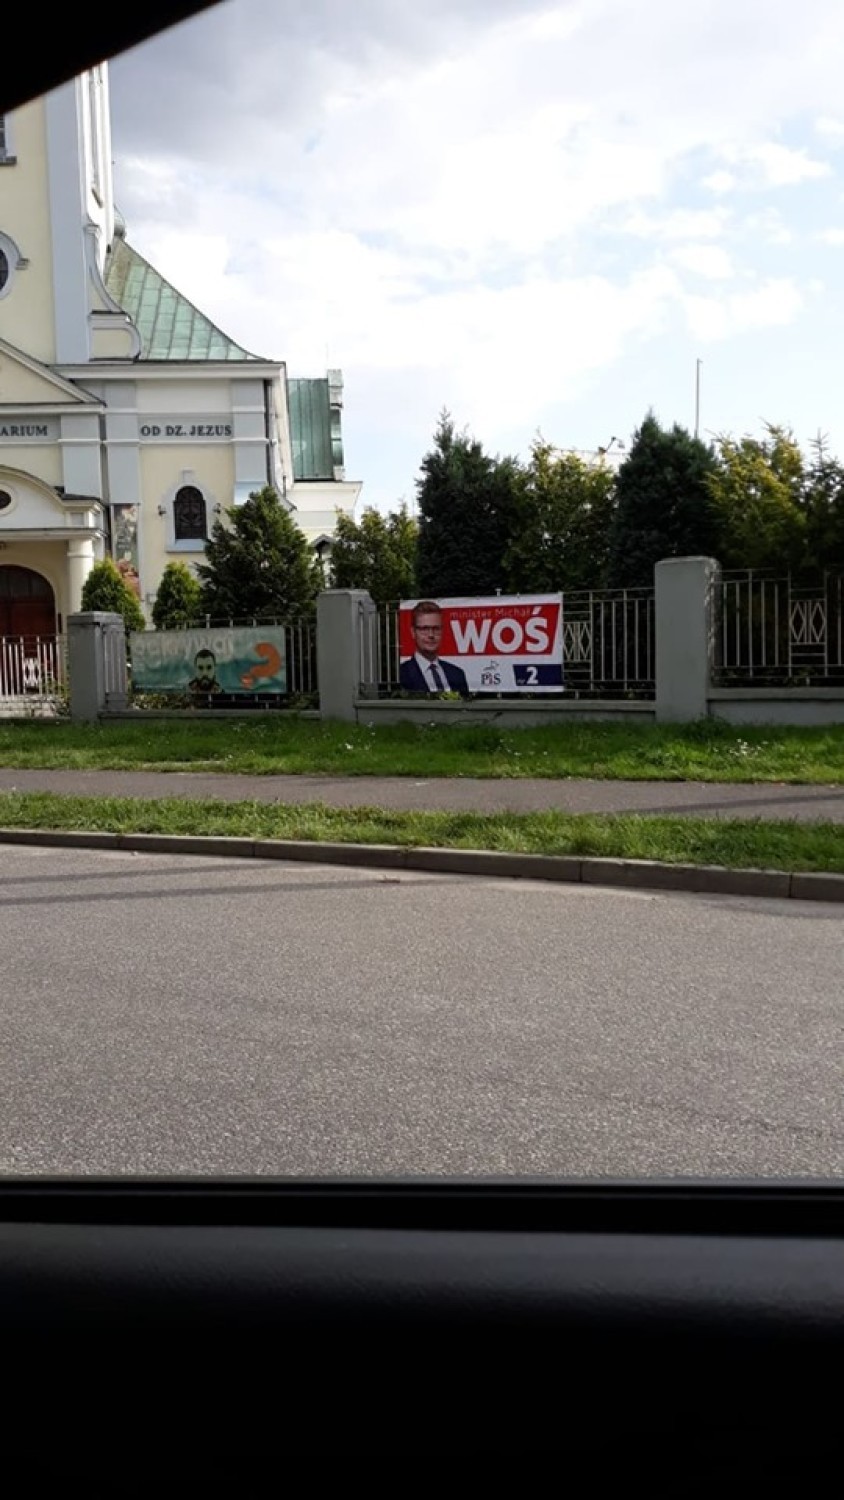 Plakat wyborczy kandydata PiS na płocie parafii w Chwałowicach